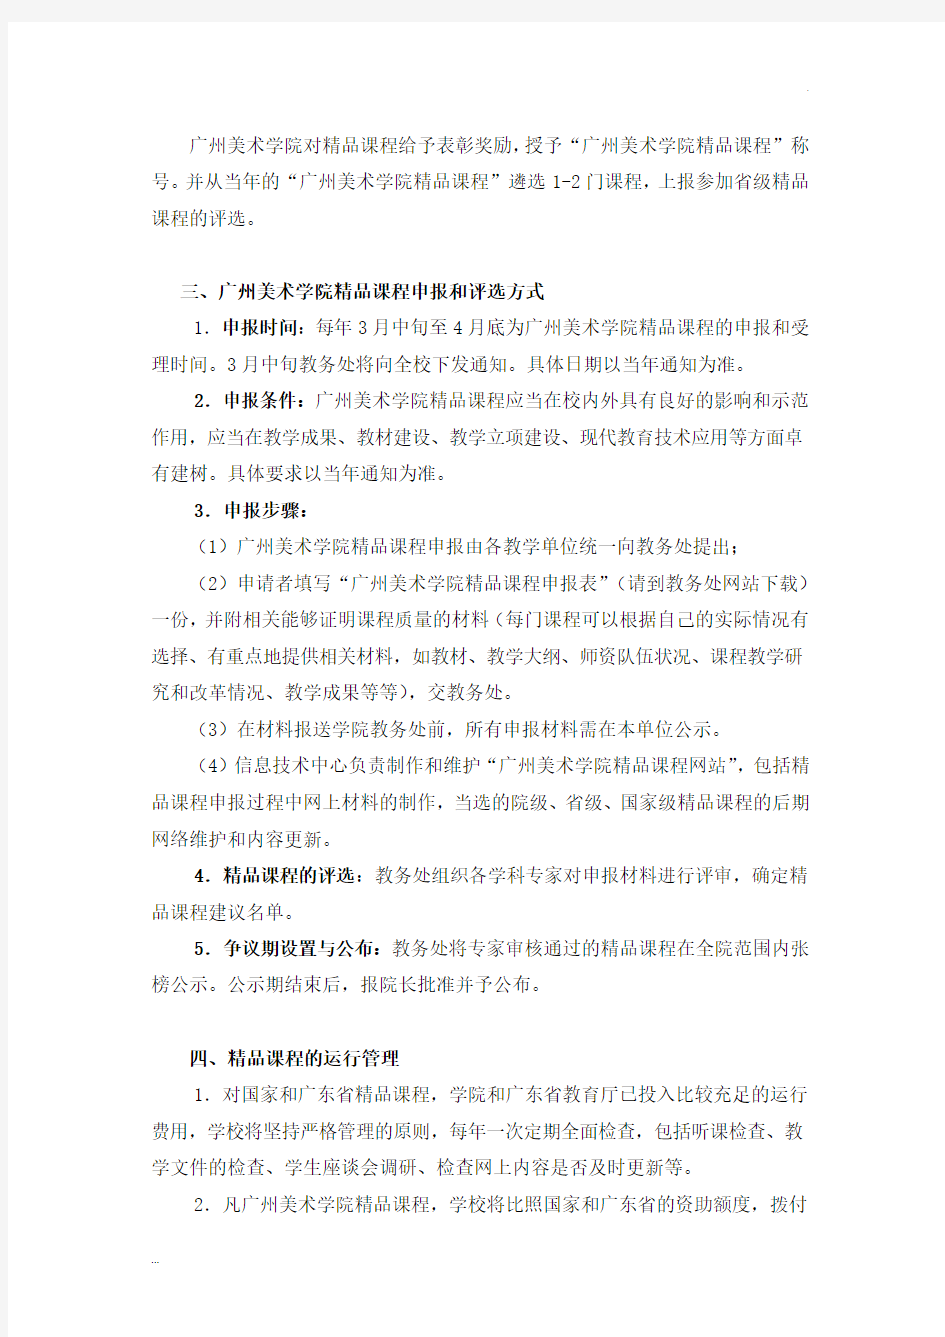 广州美术学院精品课程建设方案与管理办法(试行)文件